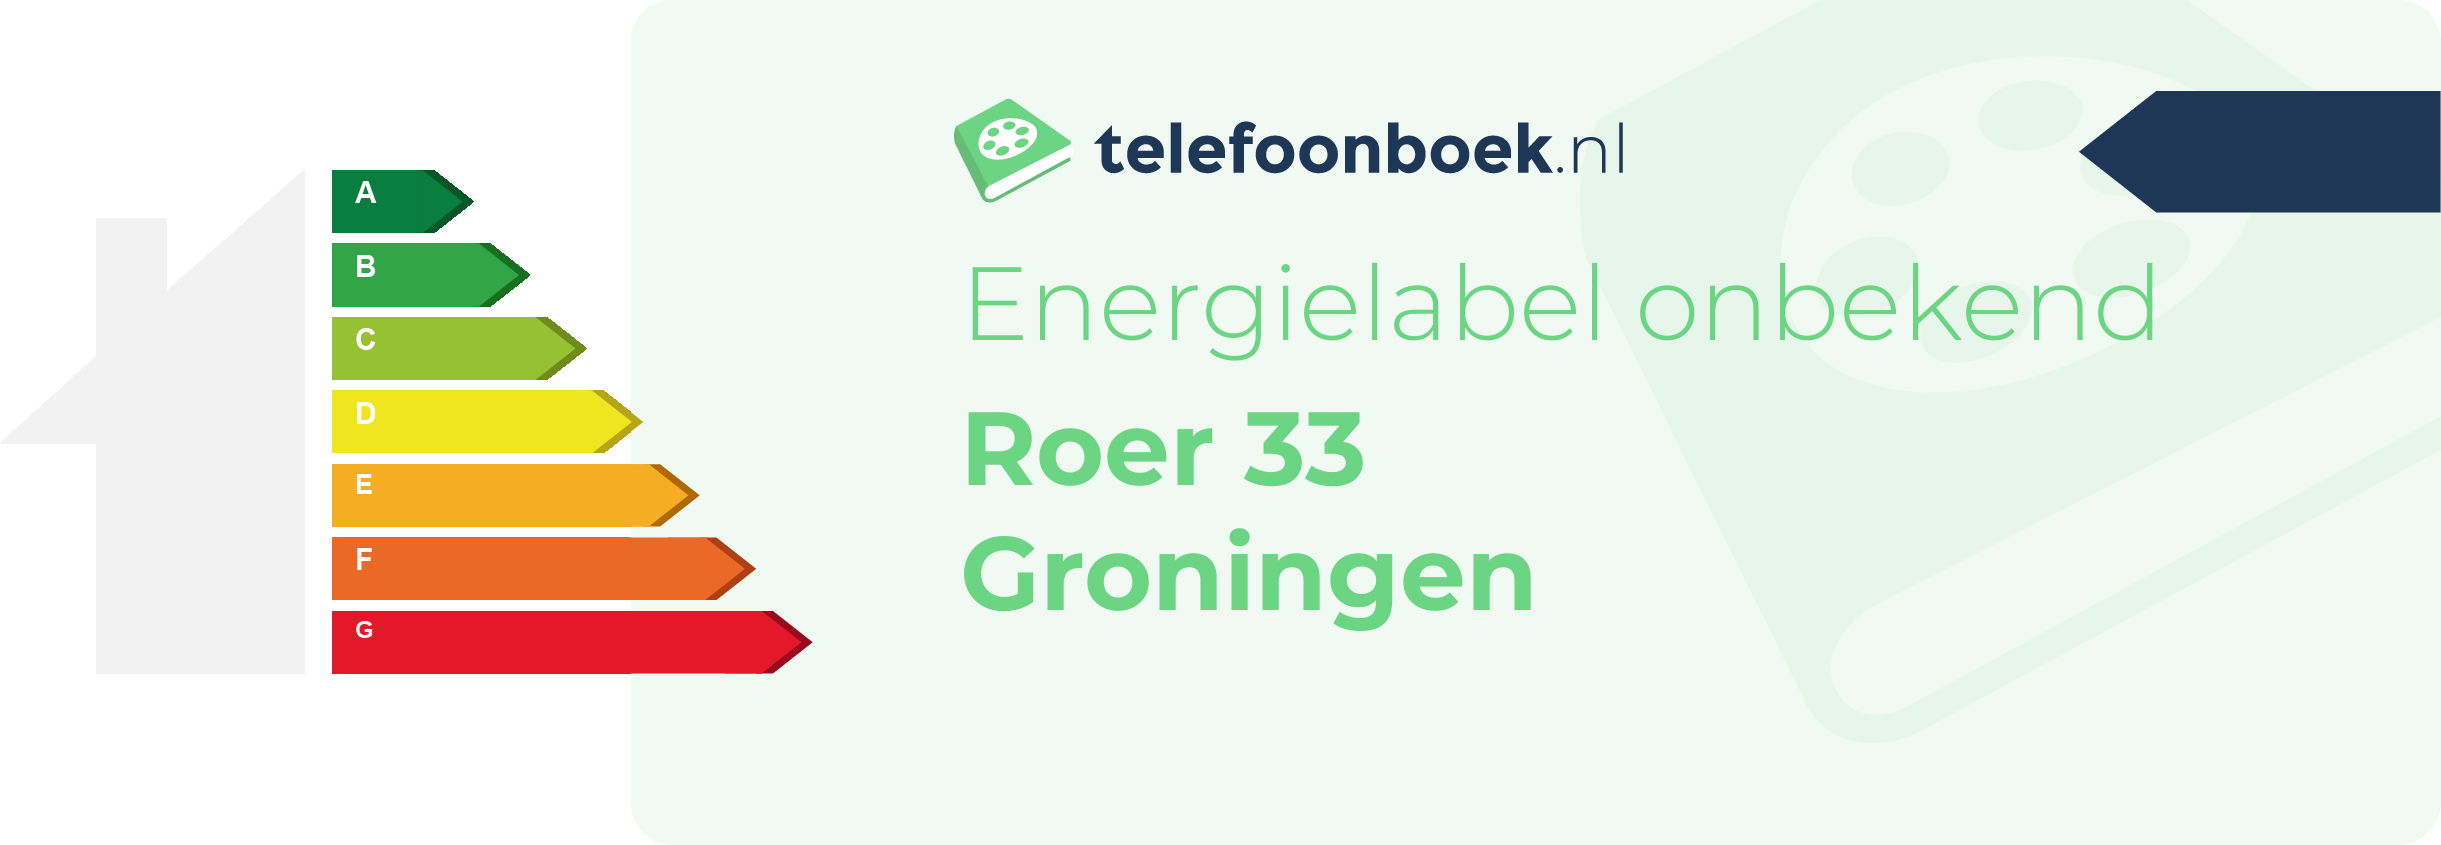 Energielabel Roer 33 Groningen